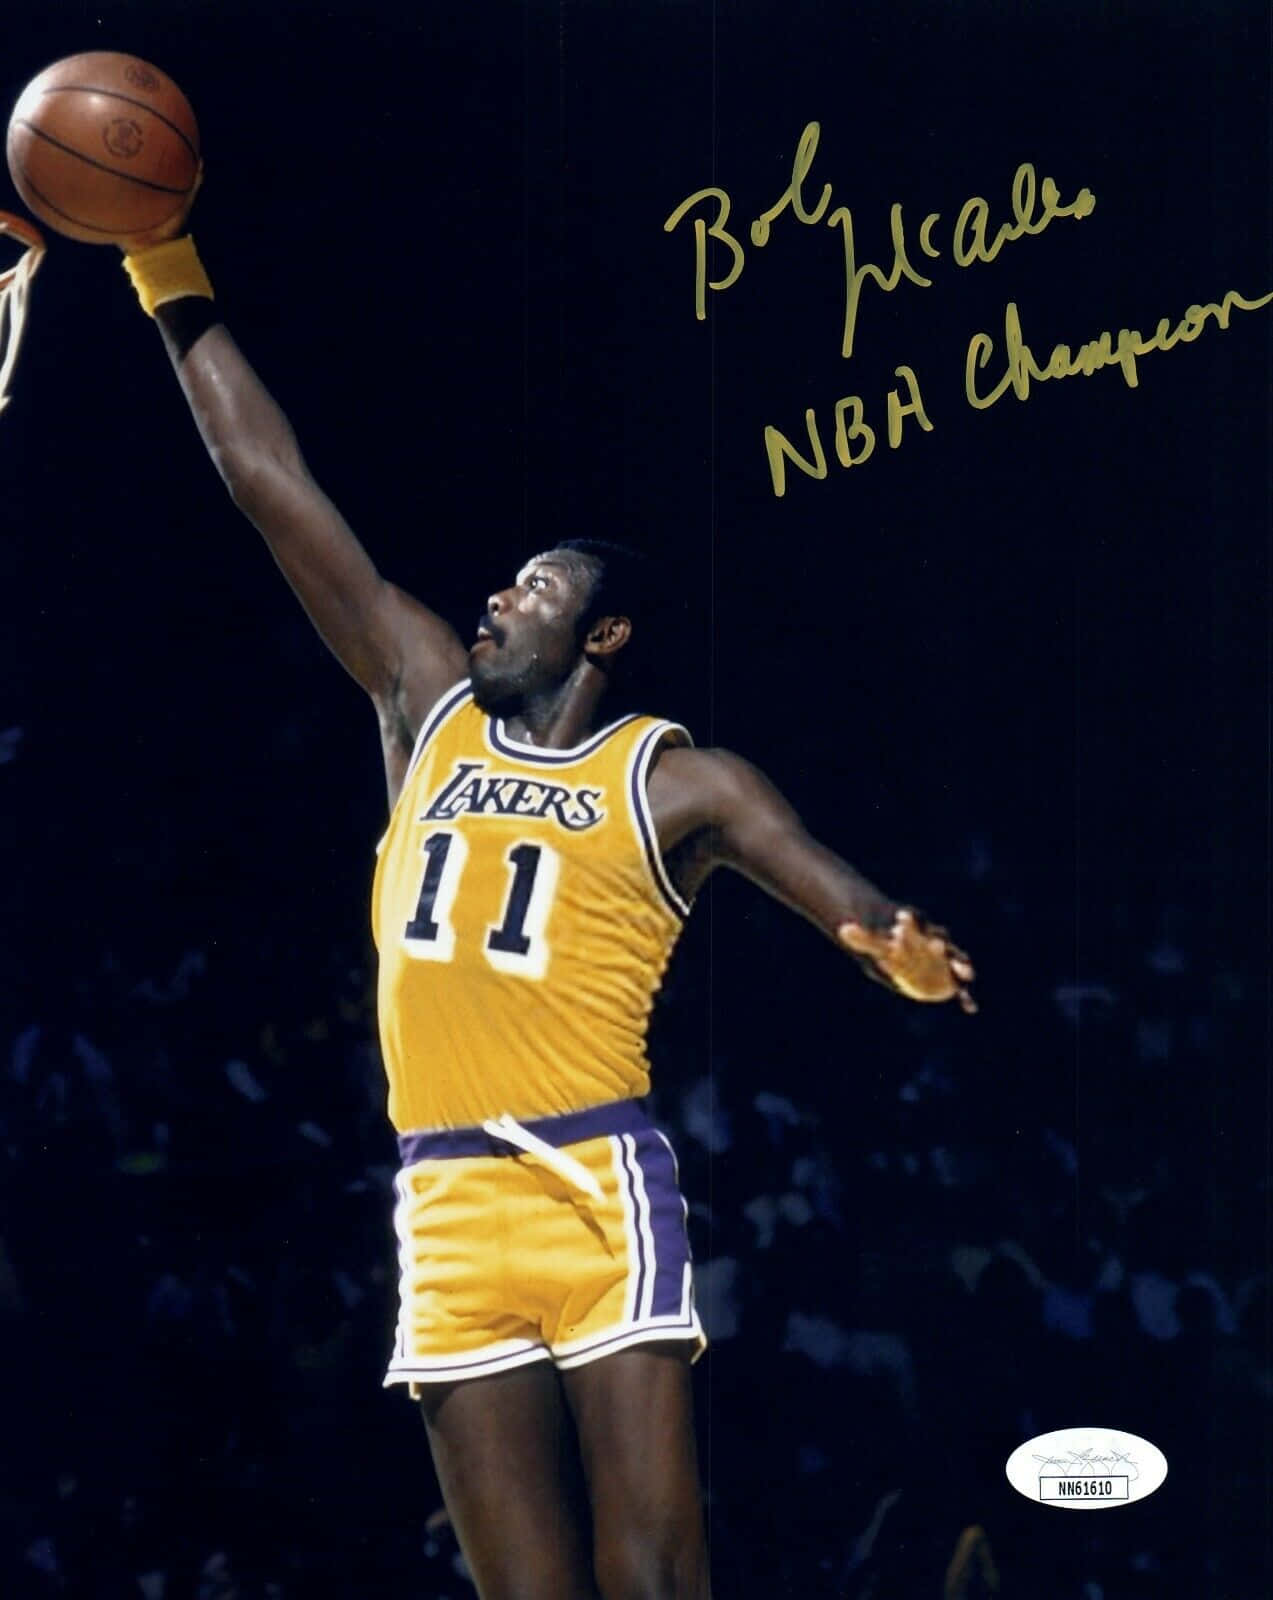 Download Legendary American NBA Champion Bob McAdoo Autograph Sign Wallpaper